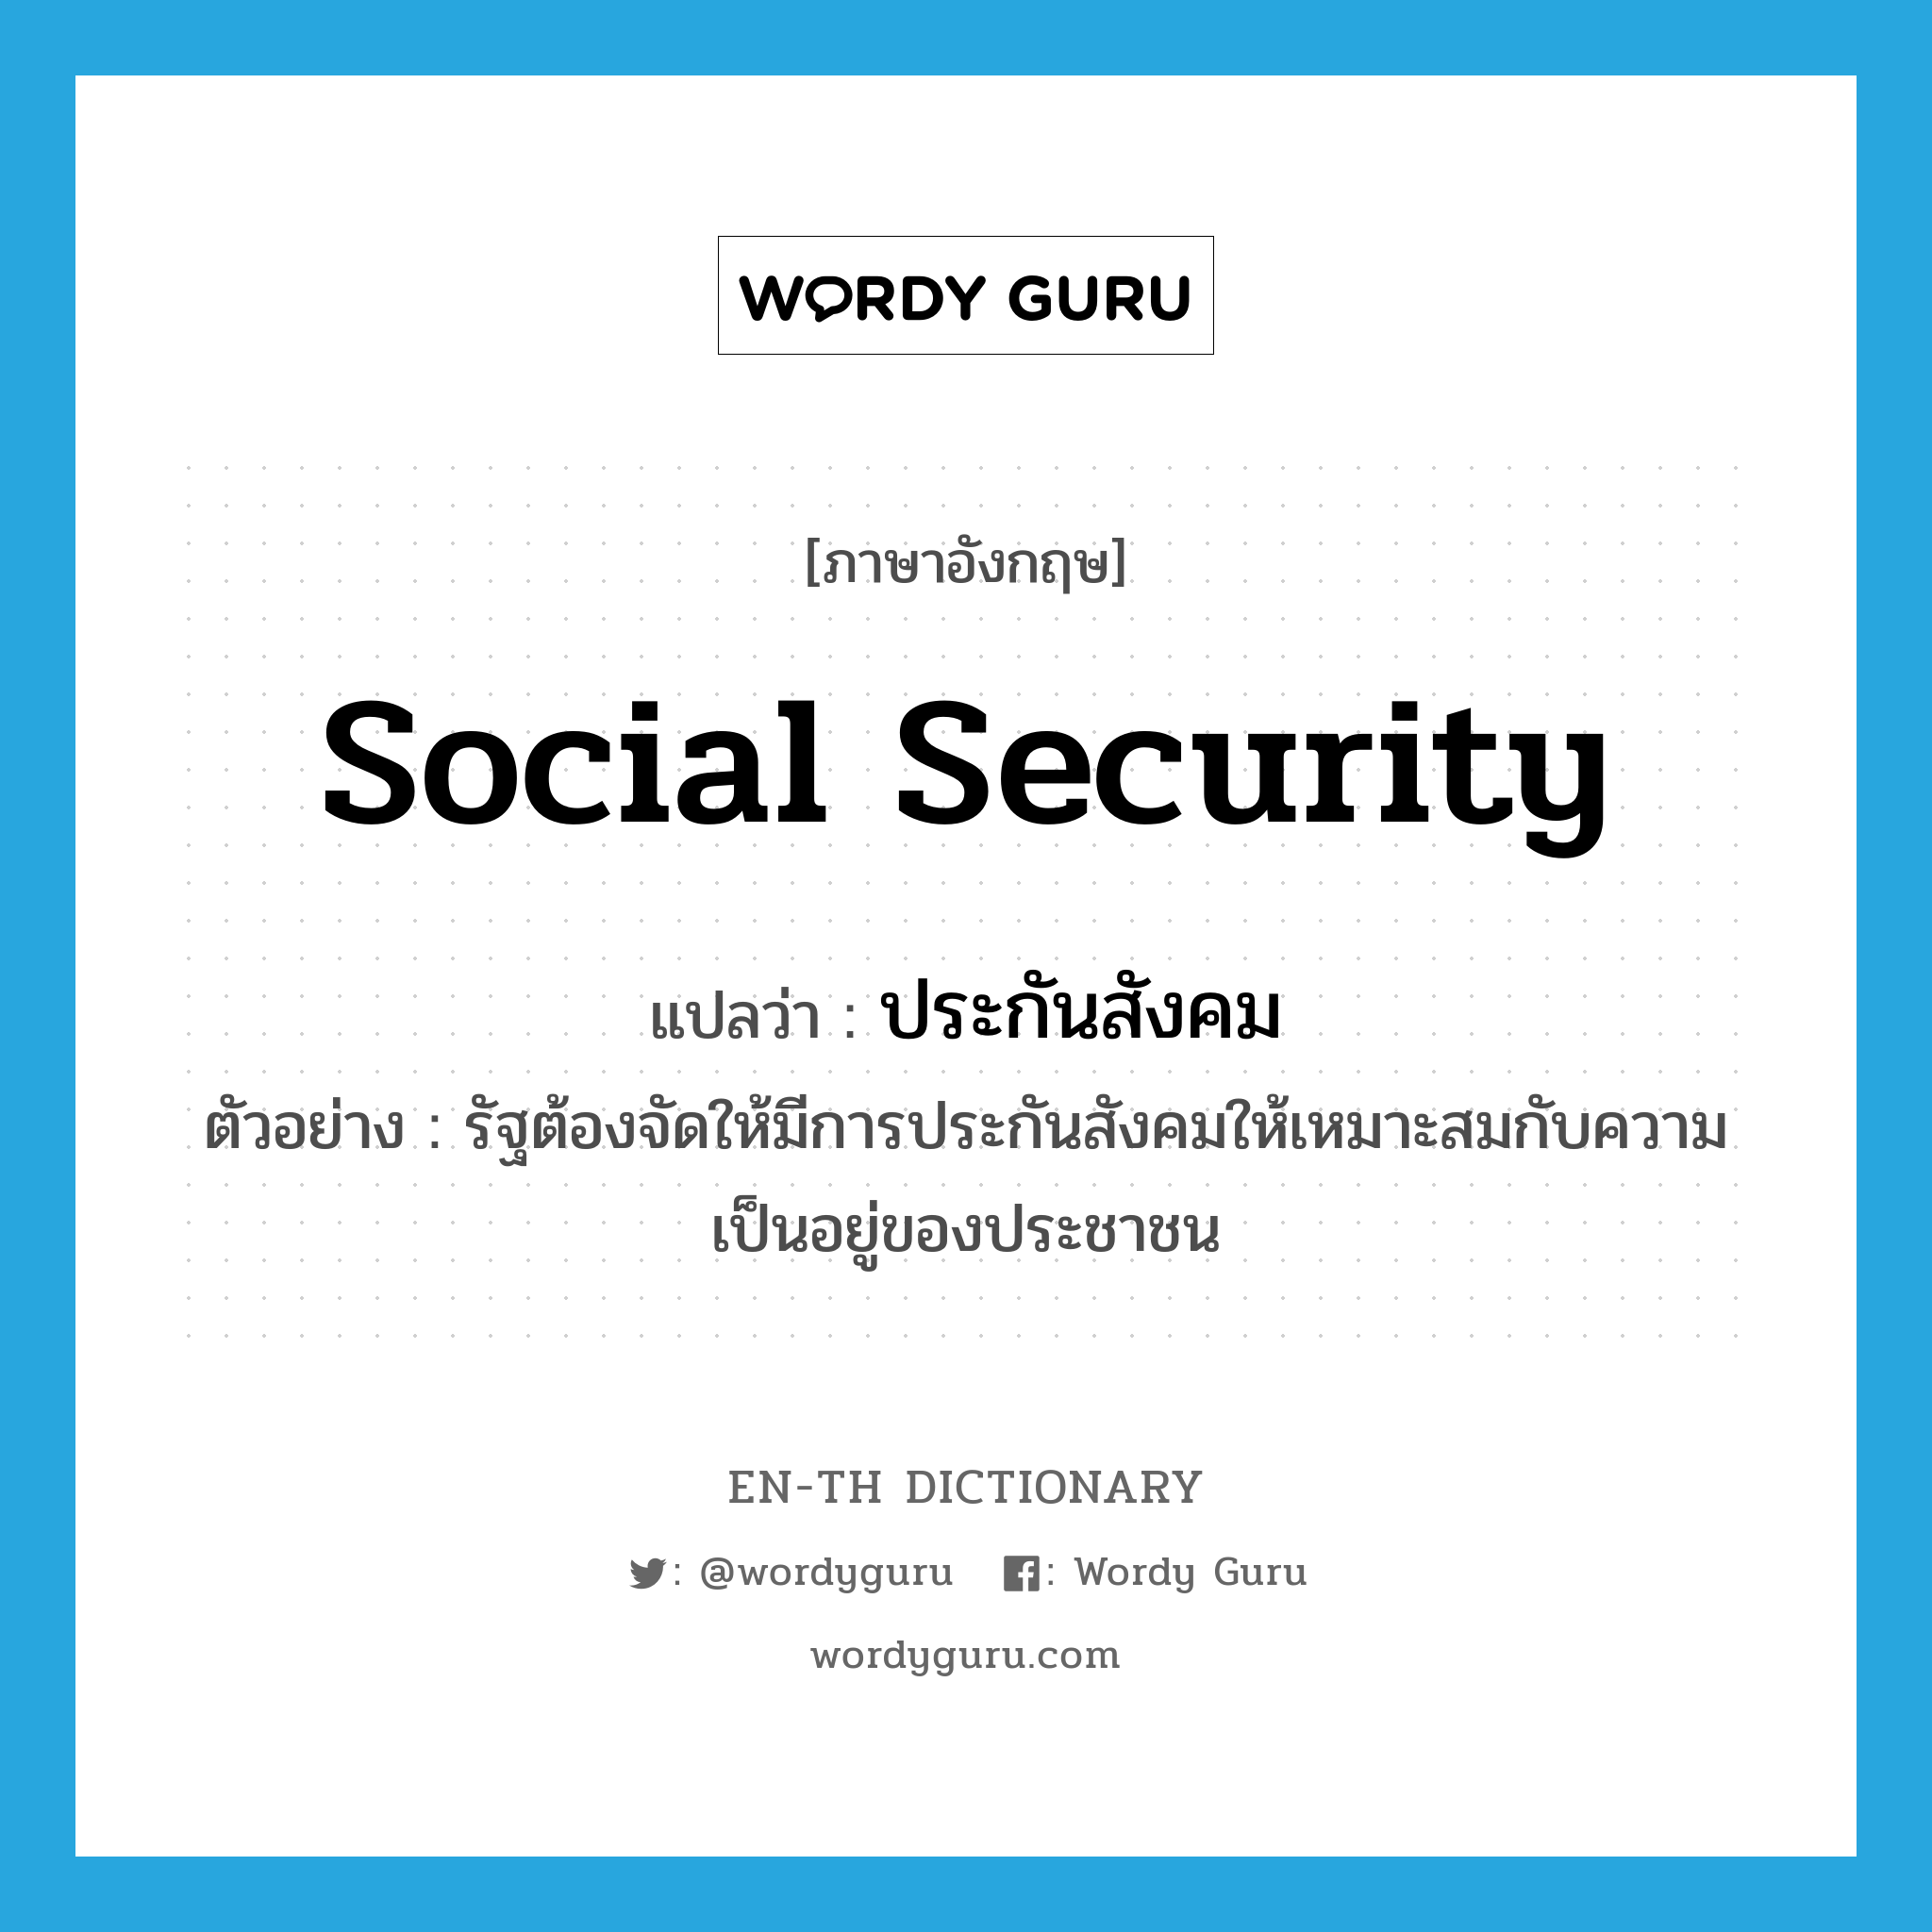 social security แปลว่า?, คำศัพท์ภาษาอังกฤษ social security แปลว่า ประกันสังคม ประเภท N ตัวอย่าง รัฐต้องจัดให้มีการประกันสังคมให้เหมาะสมกับความเป็นอยู่ของประชาชน หมวด N